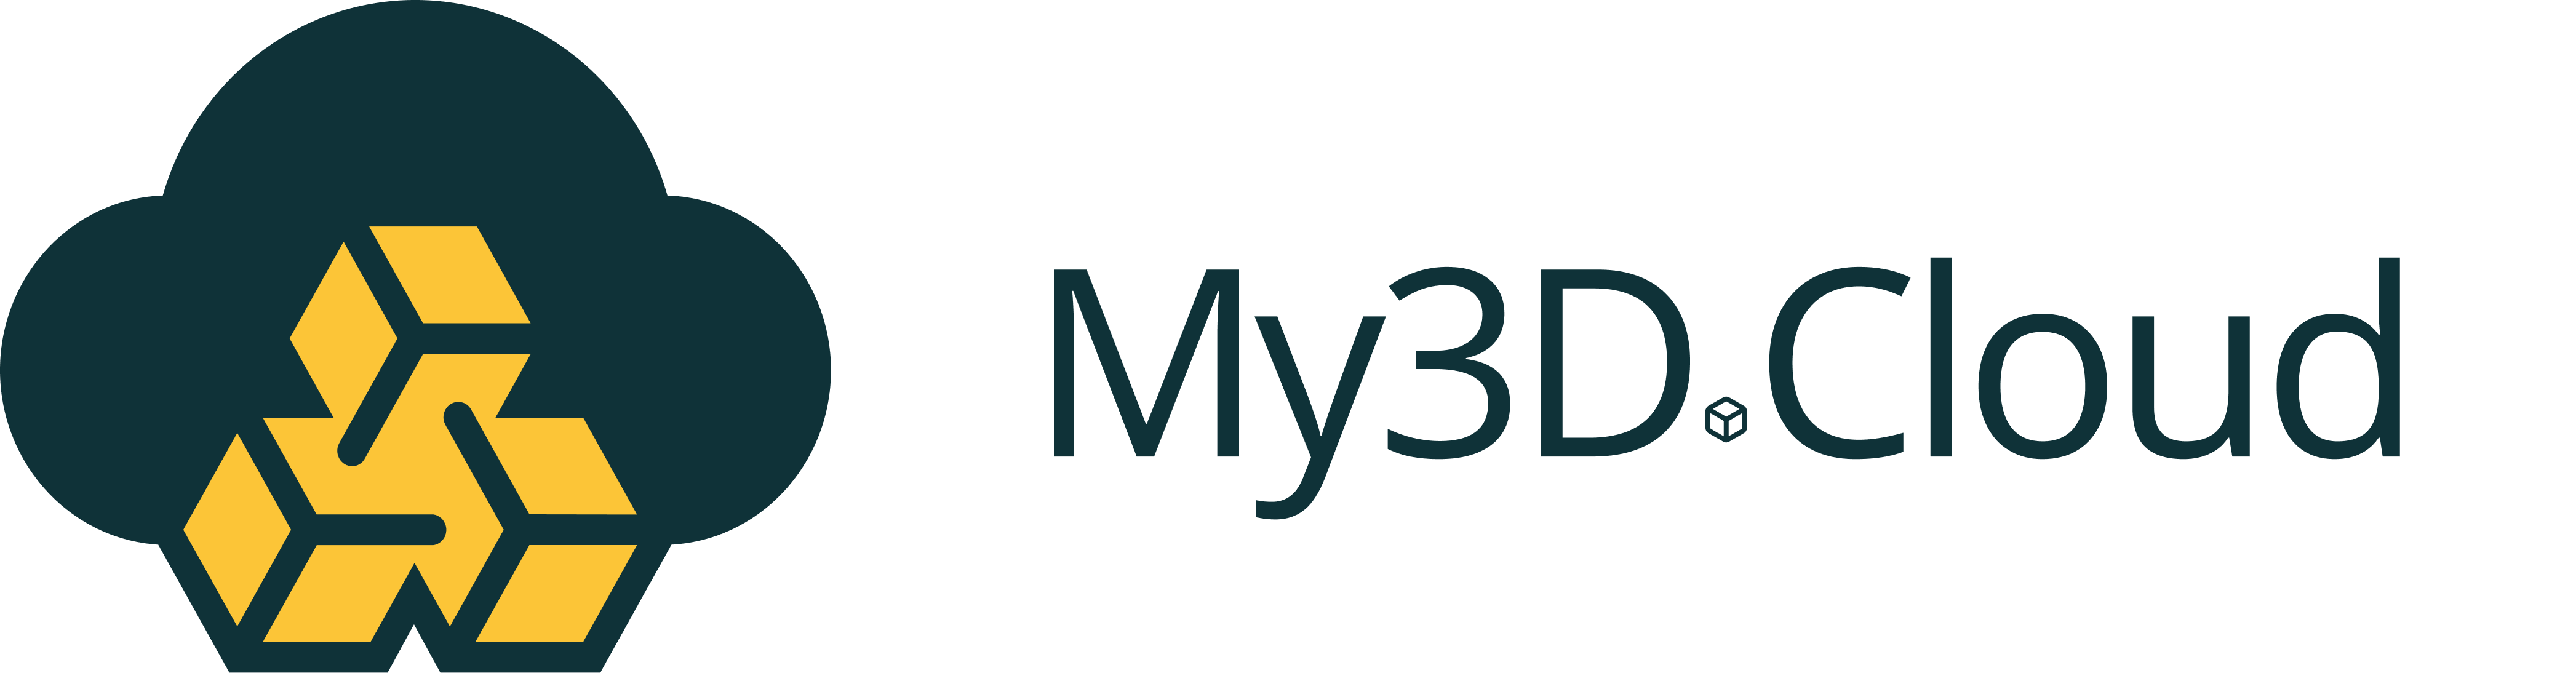 My3D.Cloud Company